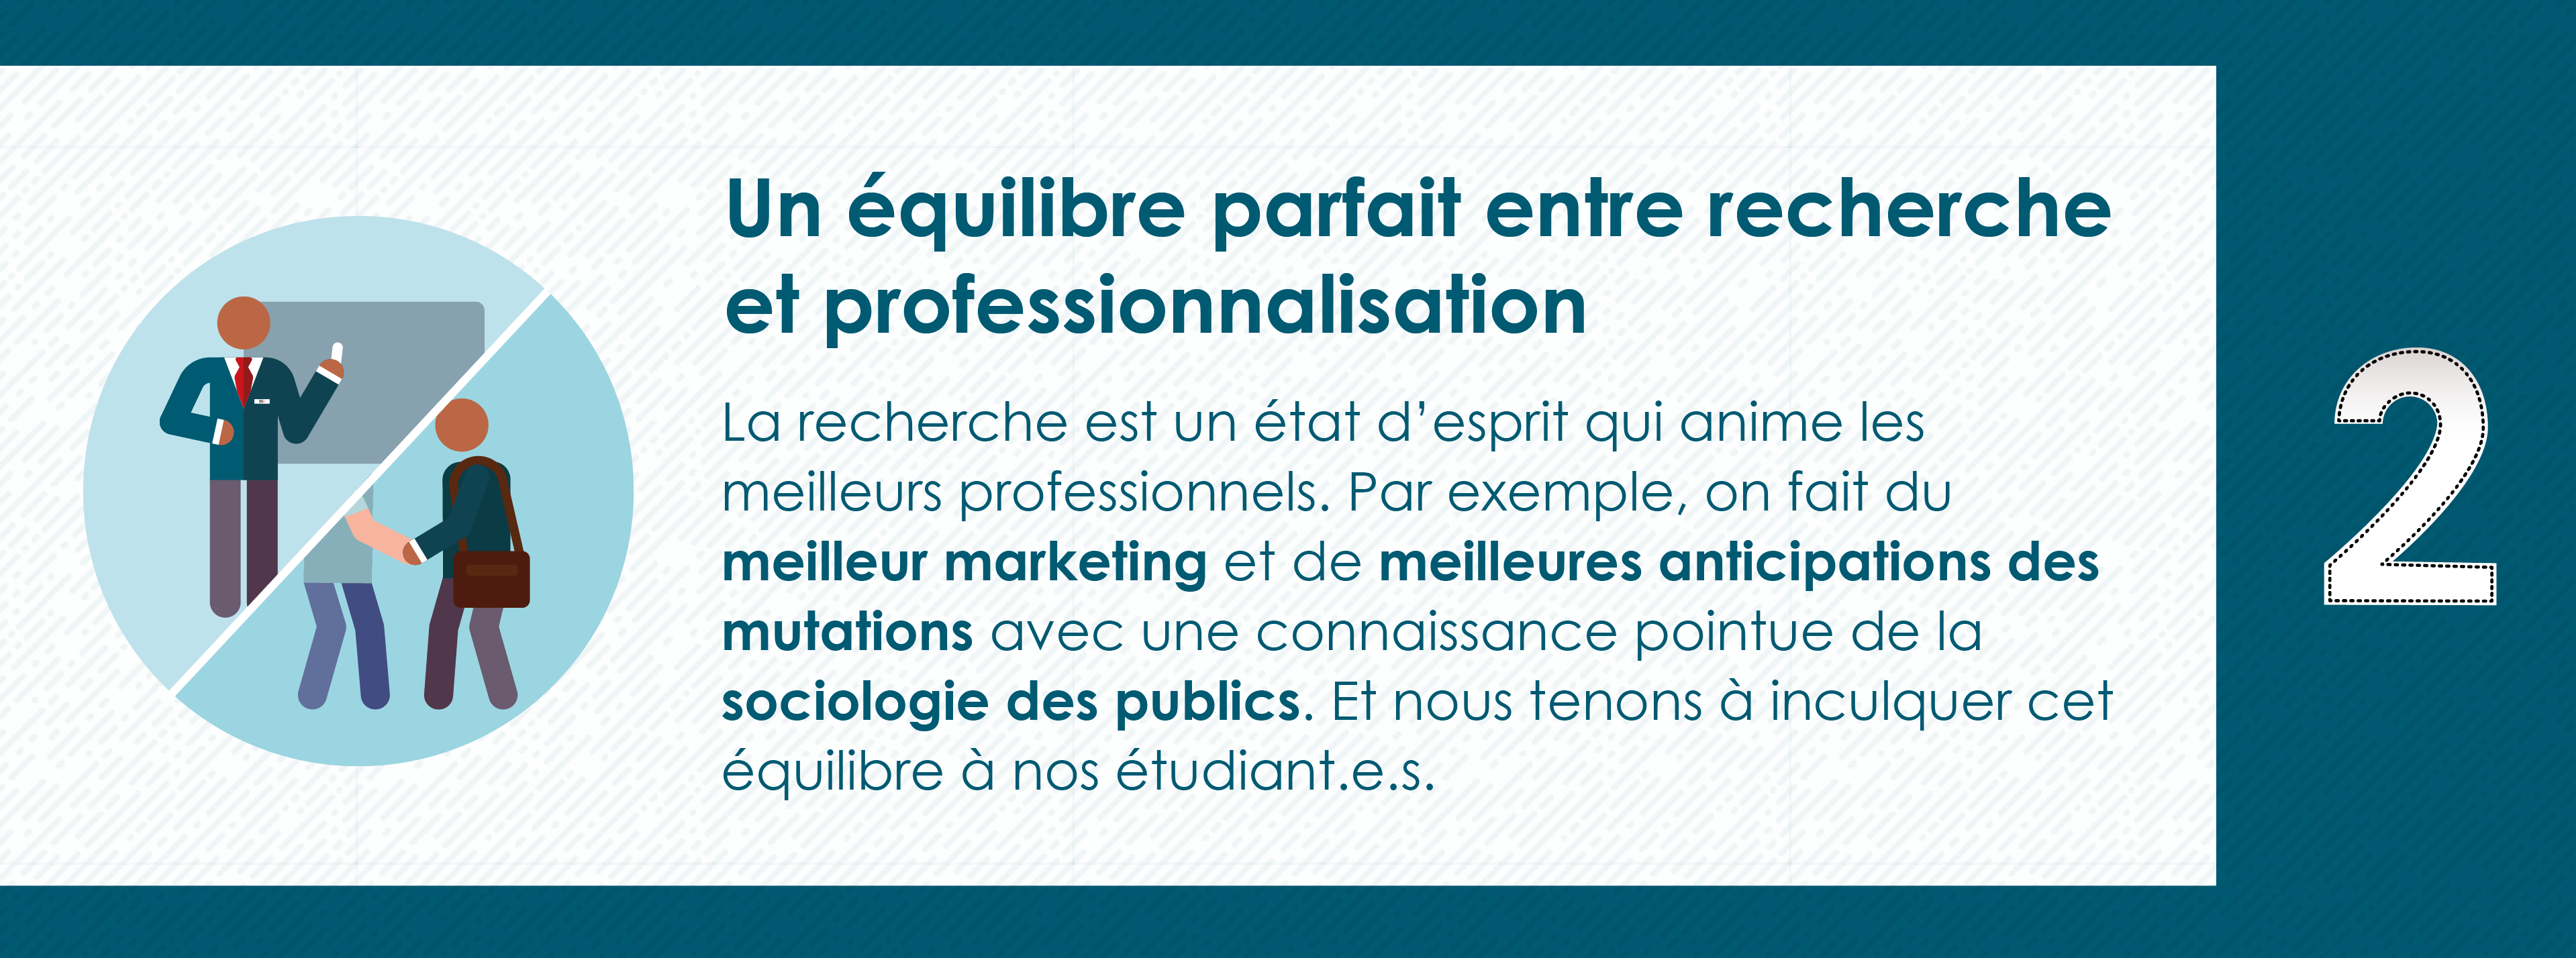 Pourquoi rejoindre le Master 2 Industrie Audiovisuelle de Paris 8 - Equilibre Recherche et professionnalisation